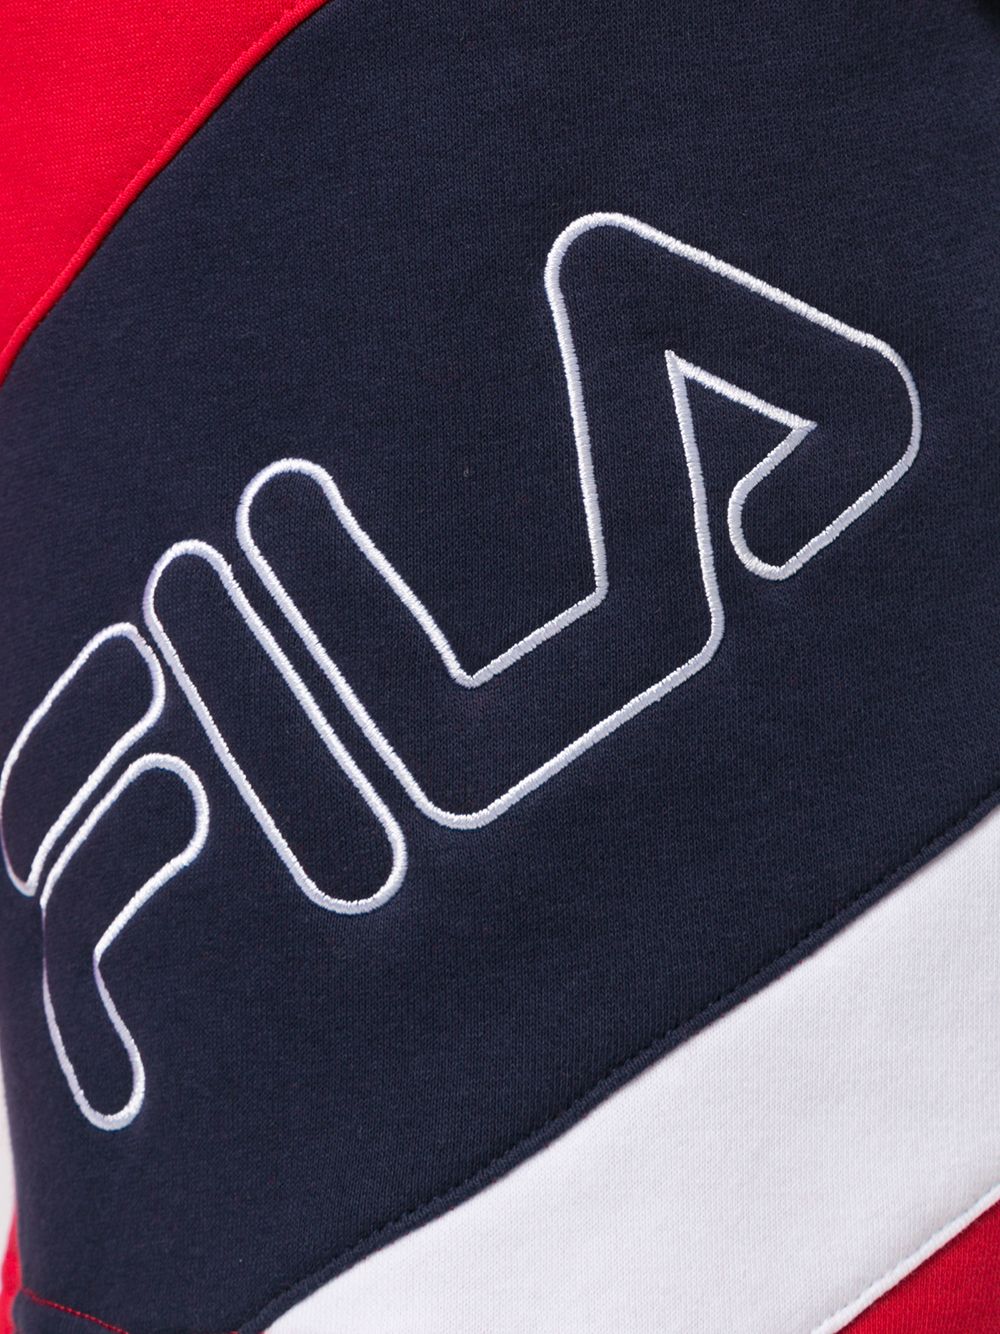 фото Fila спортивные шорты с логотипом